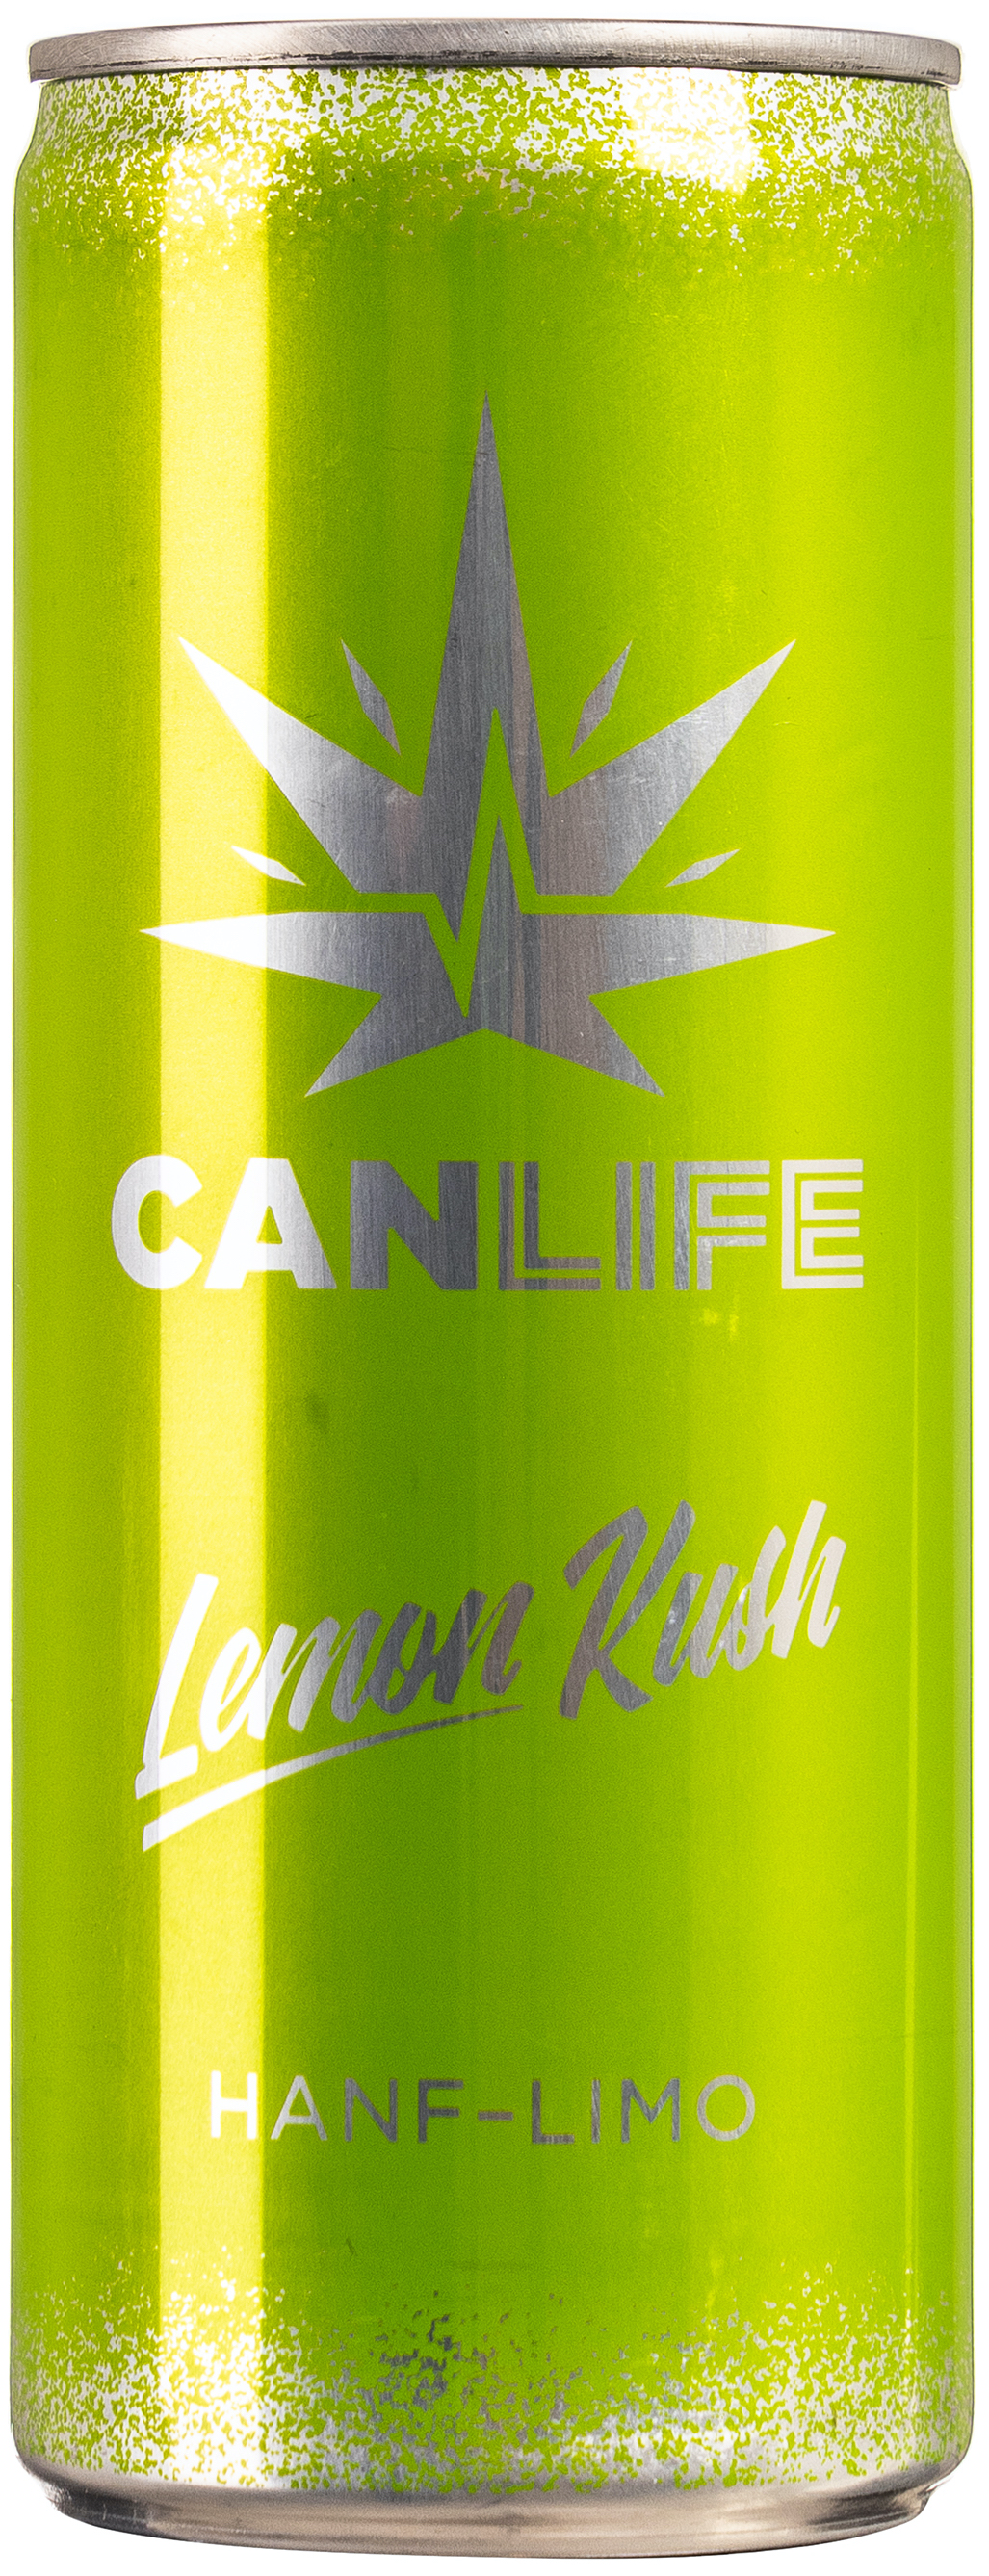 CanLife Lemon Kush Hanf Limo 0,250L EINWEG